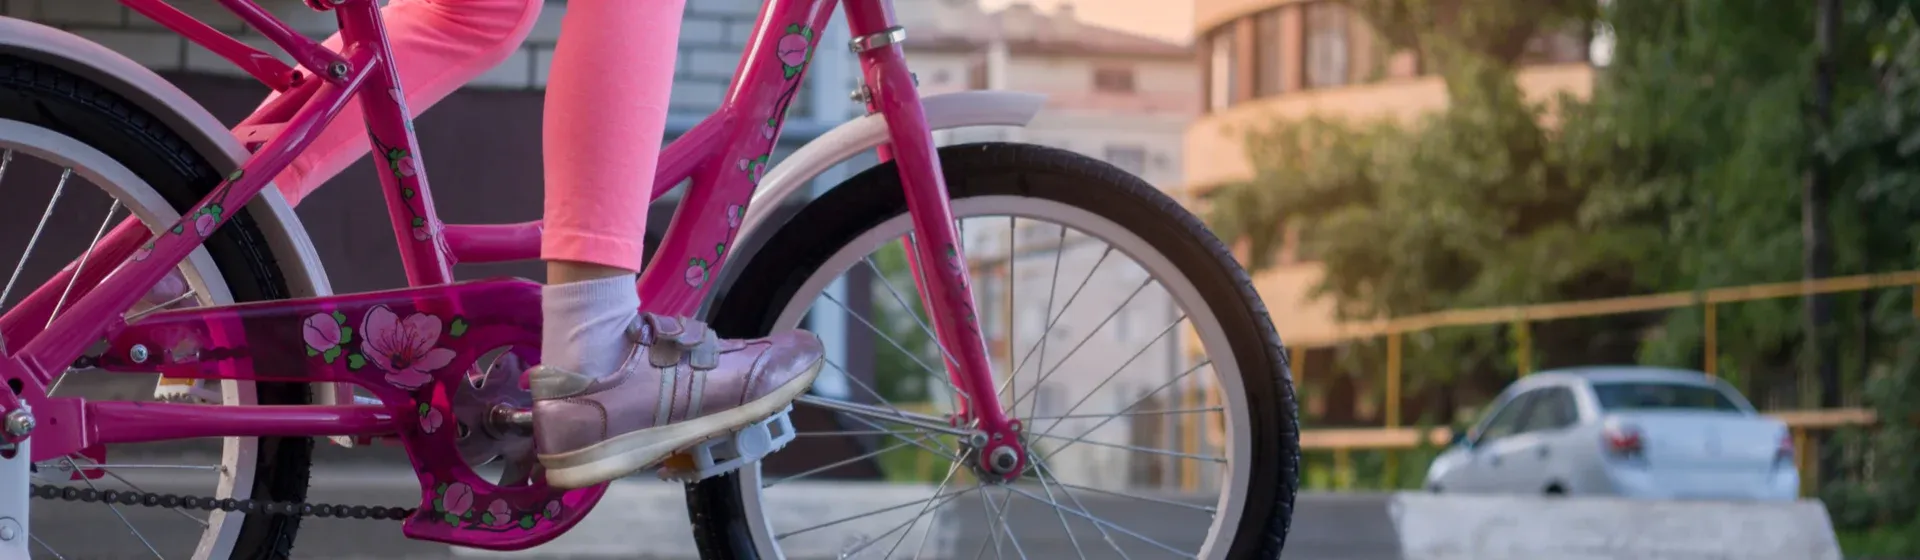 Criança pedalando em uma bicicleta rosa infantil na rua